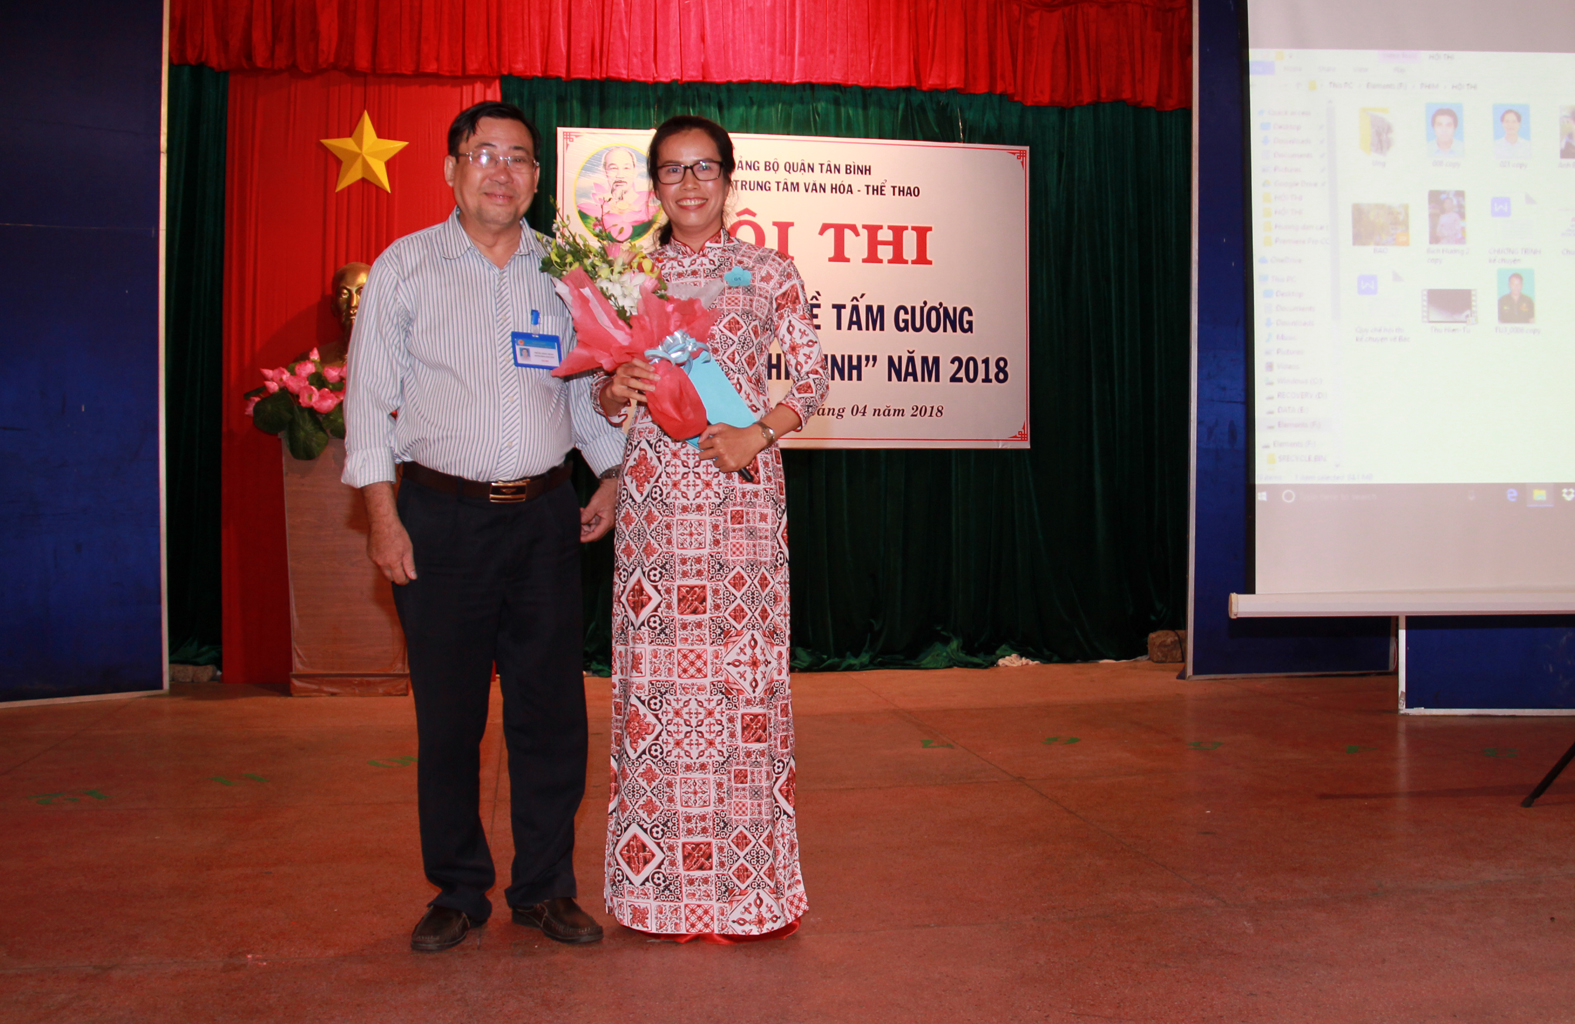 Hội thi Kể chuyện về tâm gương đạo đức Hồ Chí Minh năm 2018